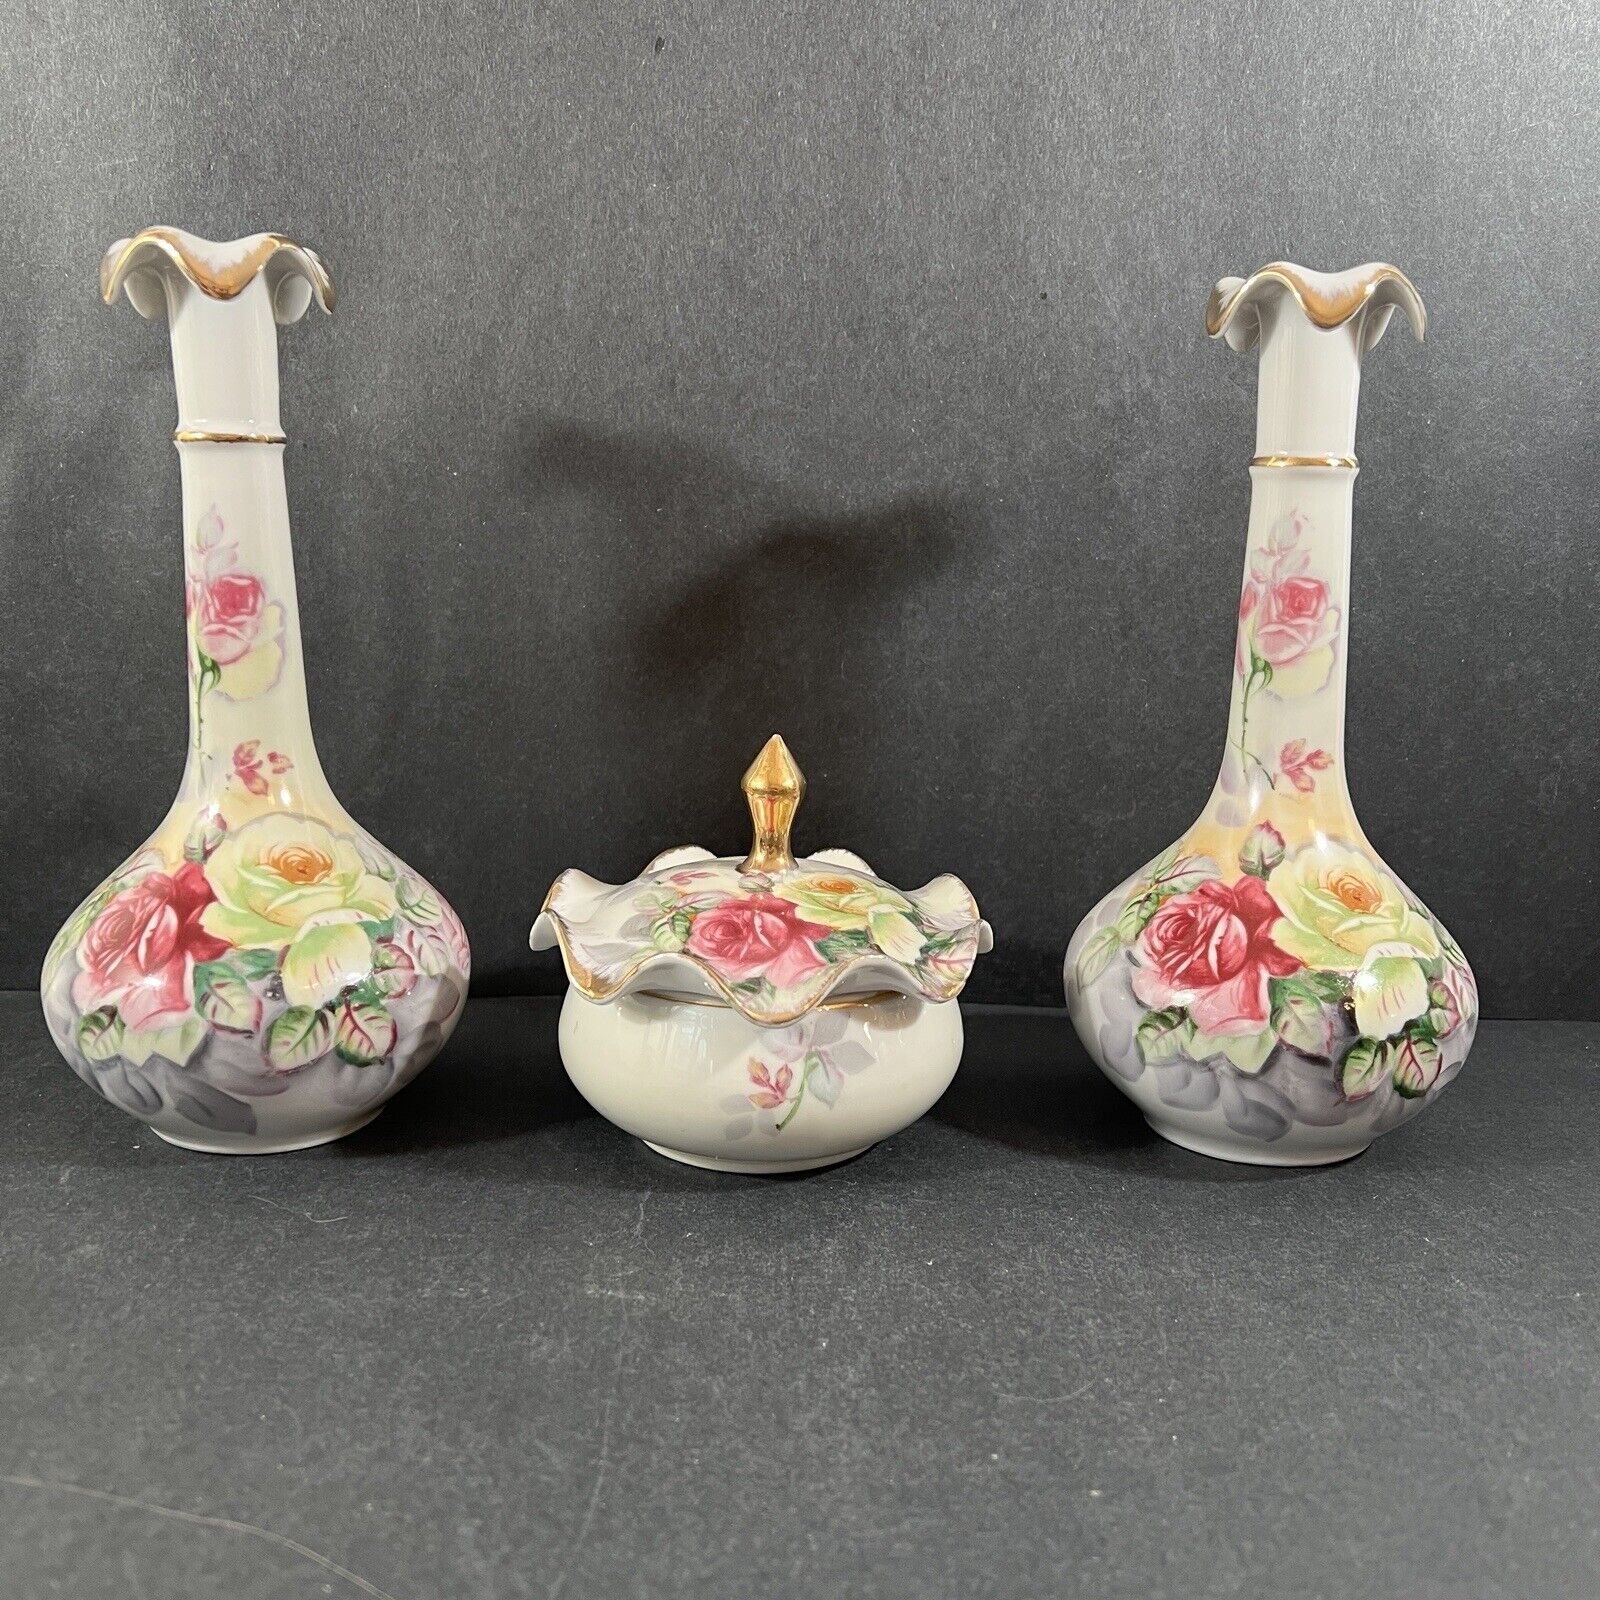 Vintage 3 Piece Vanity Set Arnart Japan Porcelain 1950s Powder Jar Vases Roses